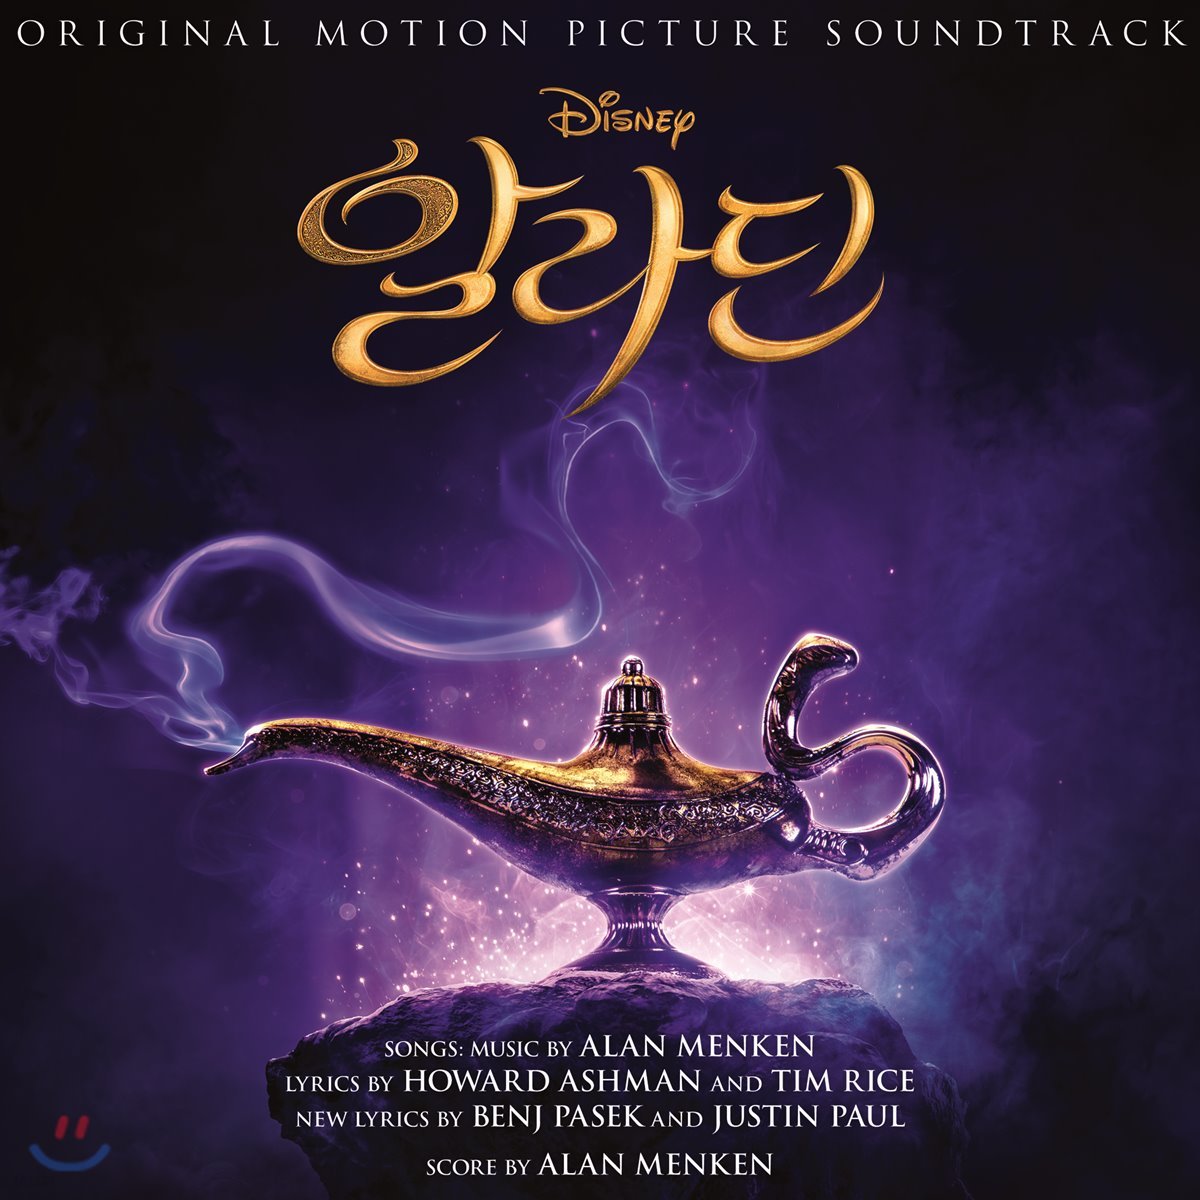 알라딘 영화음악 [한국어 버전] (Aladdin OST)